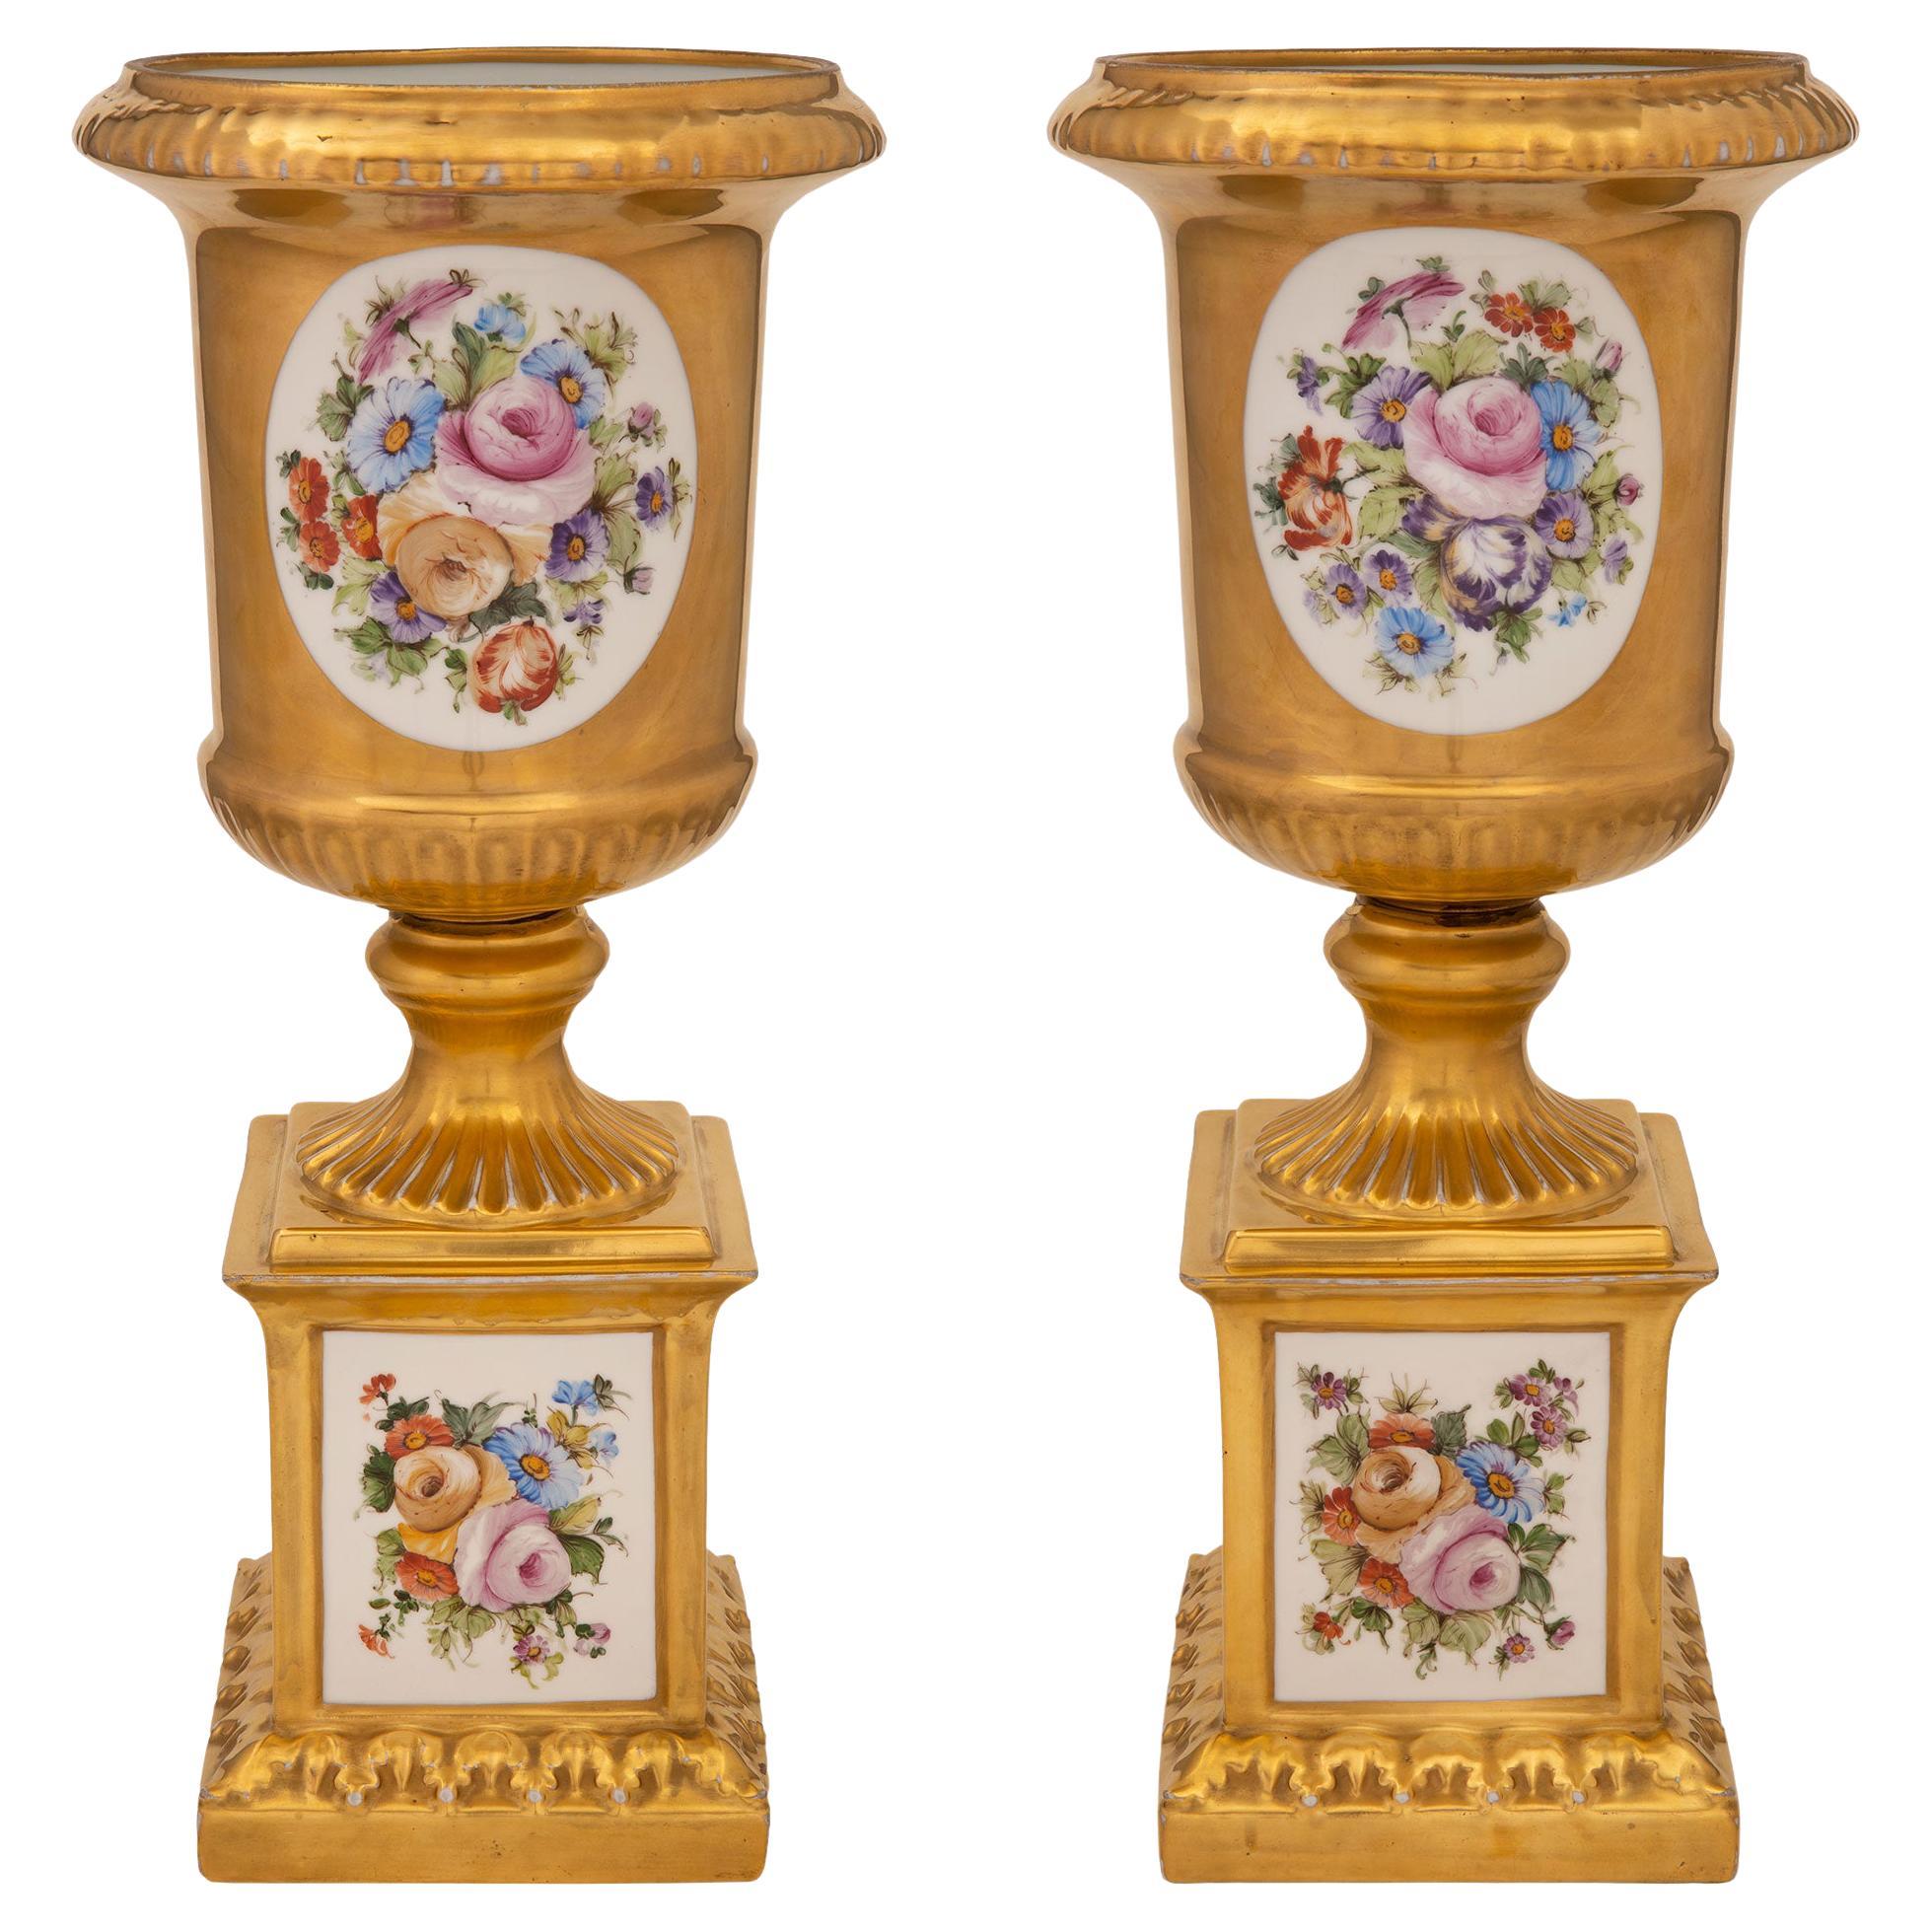 Italian 19th Century Louis XVI Style Capodimonte Porcelain Urns